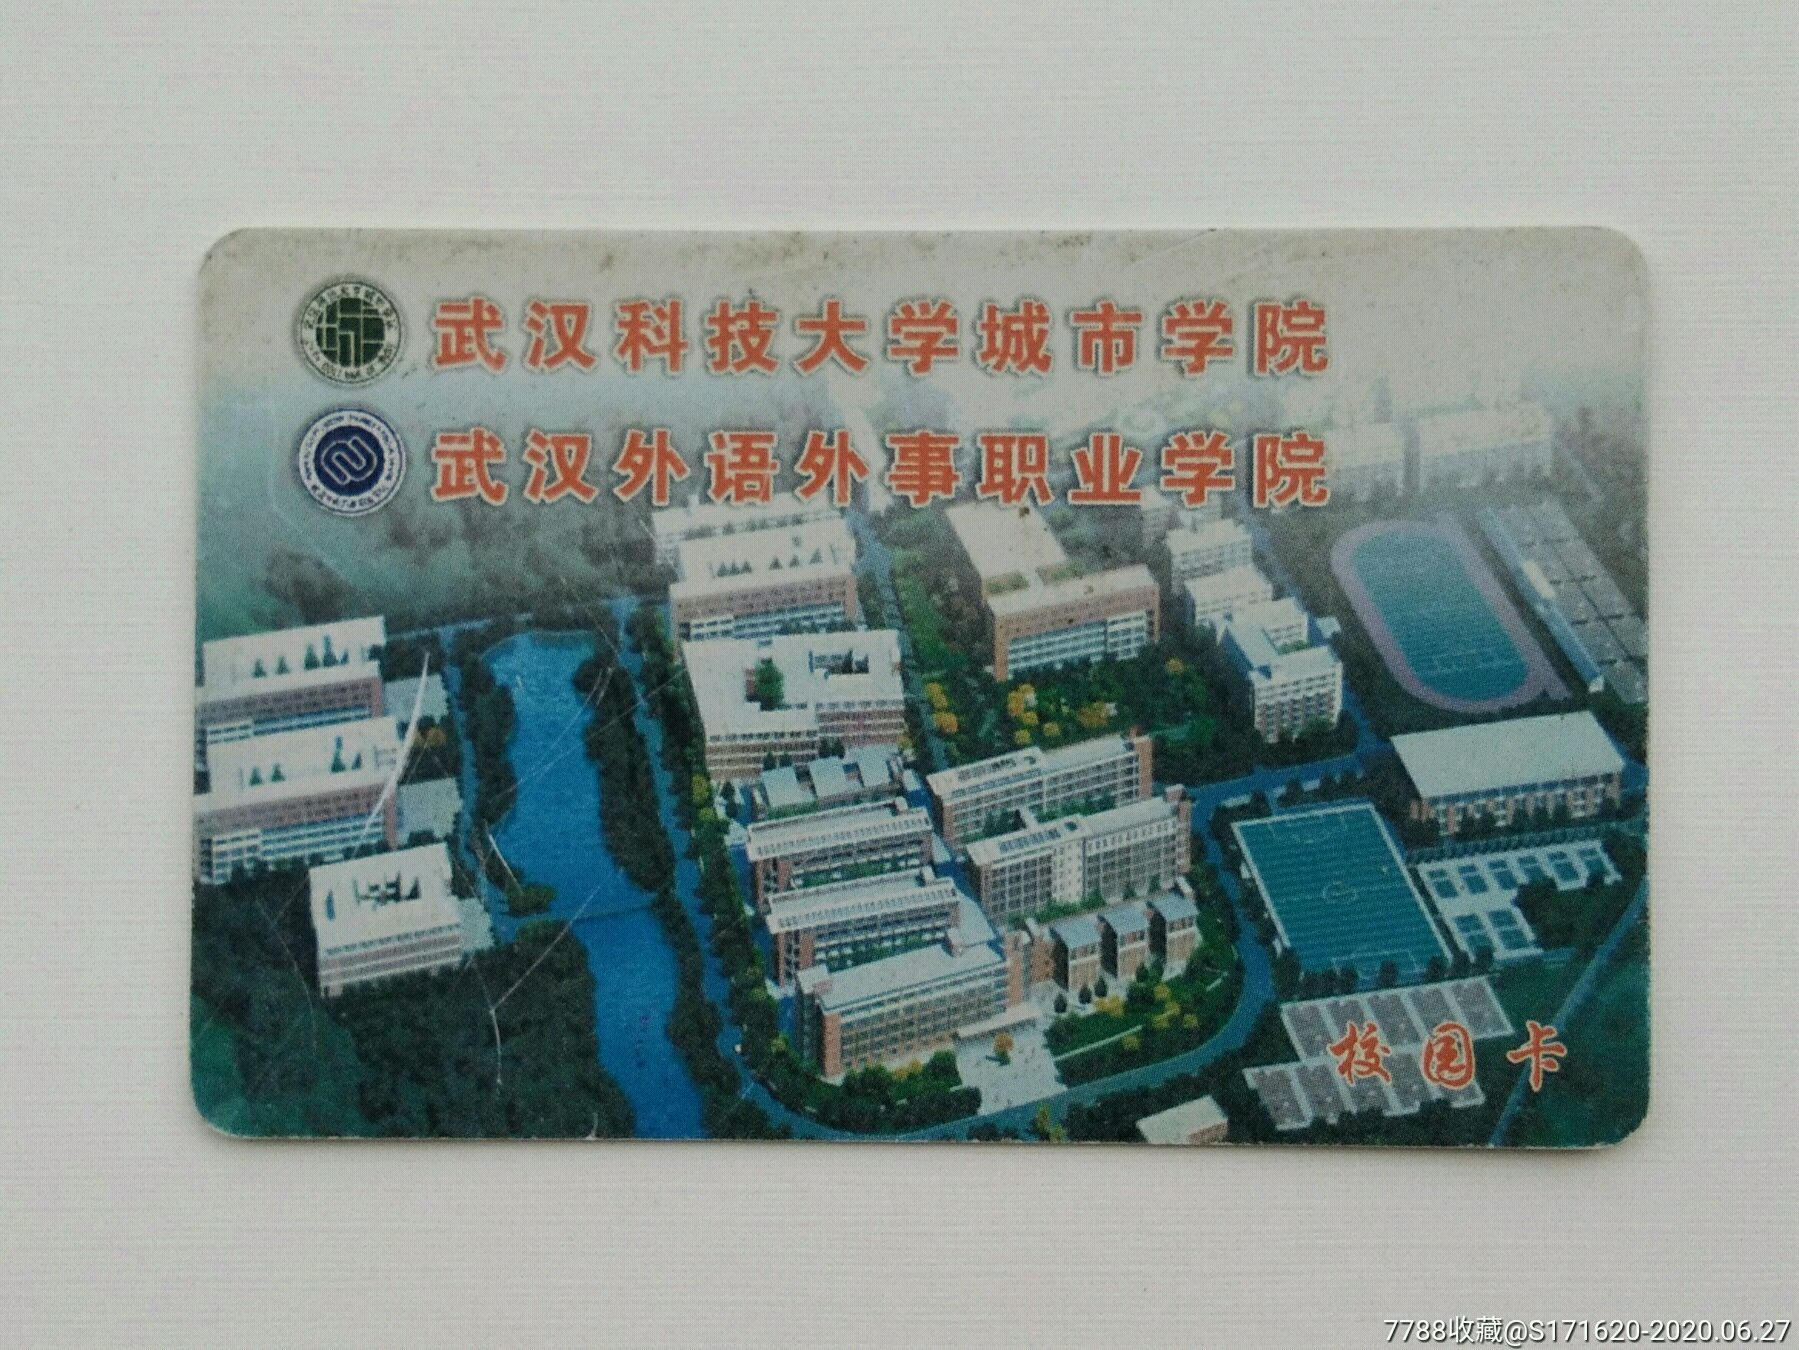 武汉科技大学城市学院卡